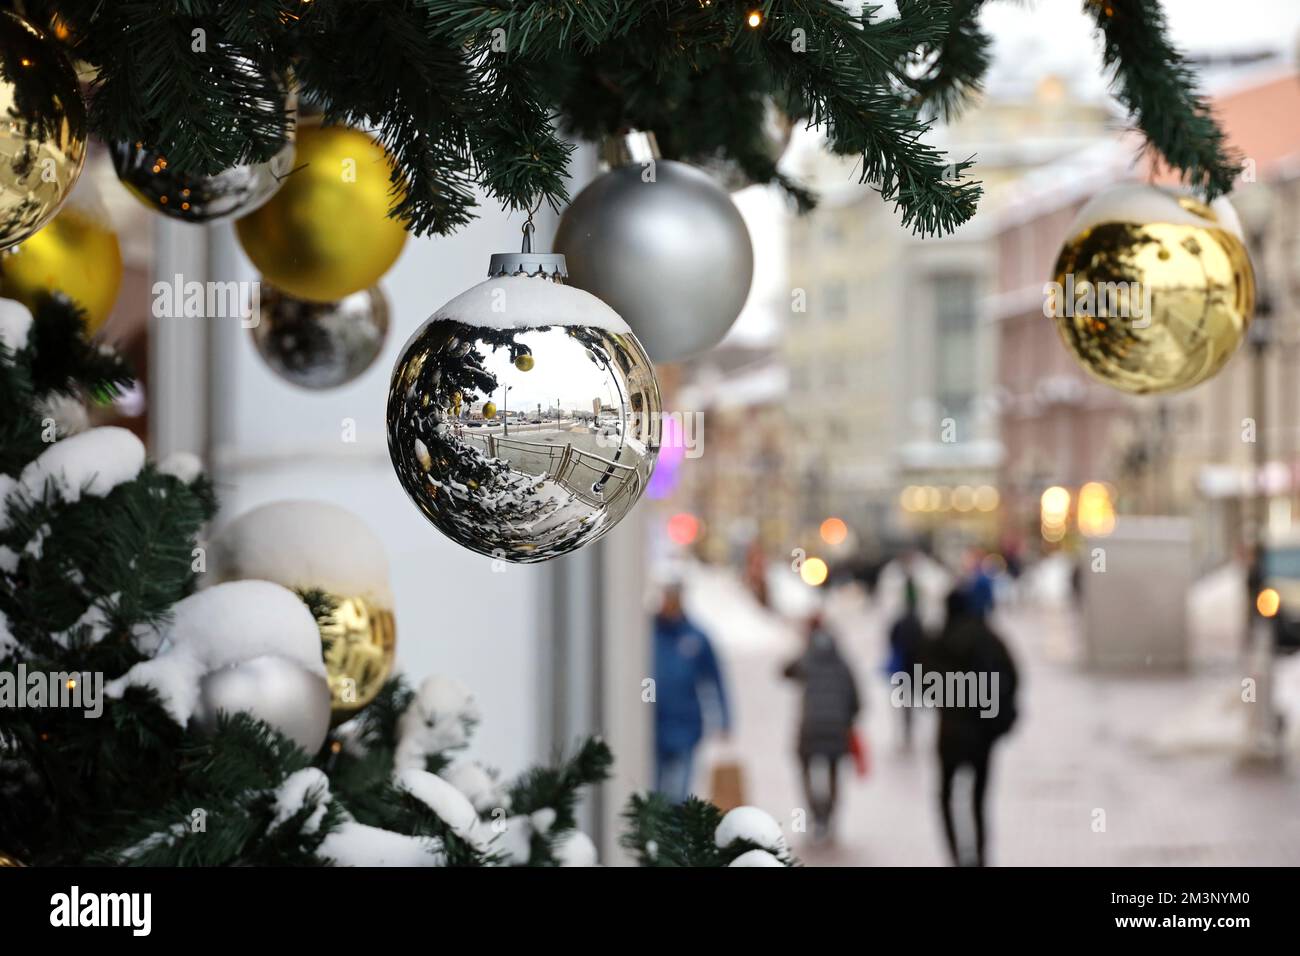 Fête du nouvel an en ville, boules de Noël sur branches de sapin. Décorations de fête dans la rue sur fond de gens, festivités, vacances d'hiver Banque D'Images